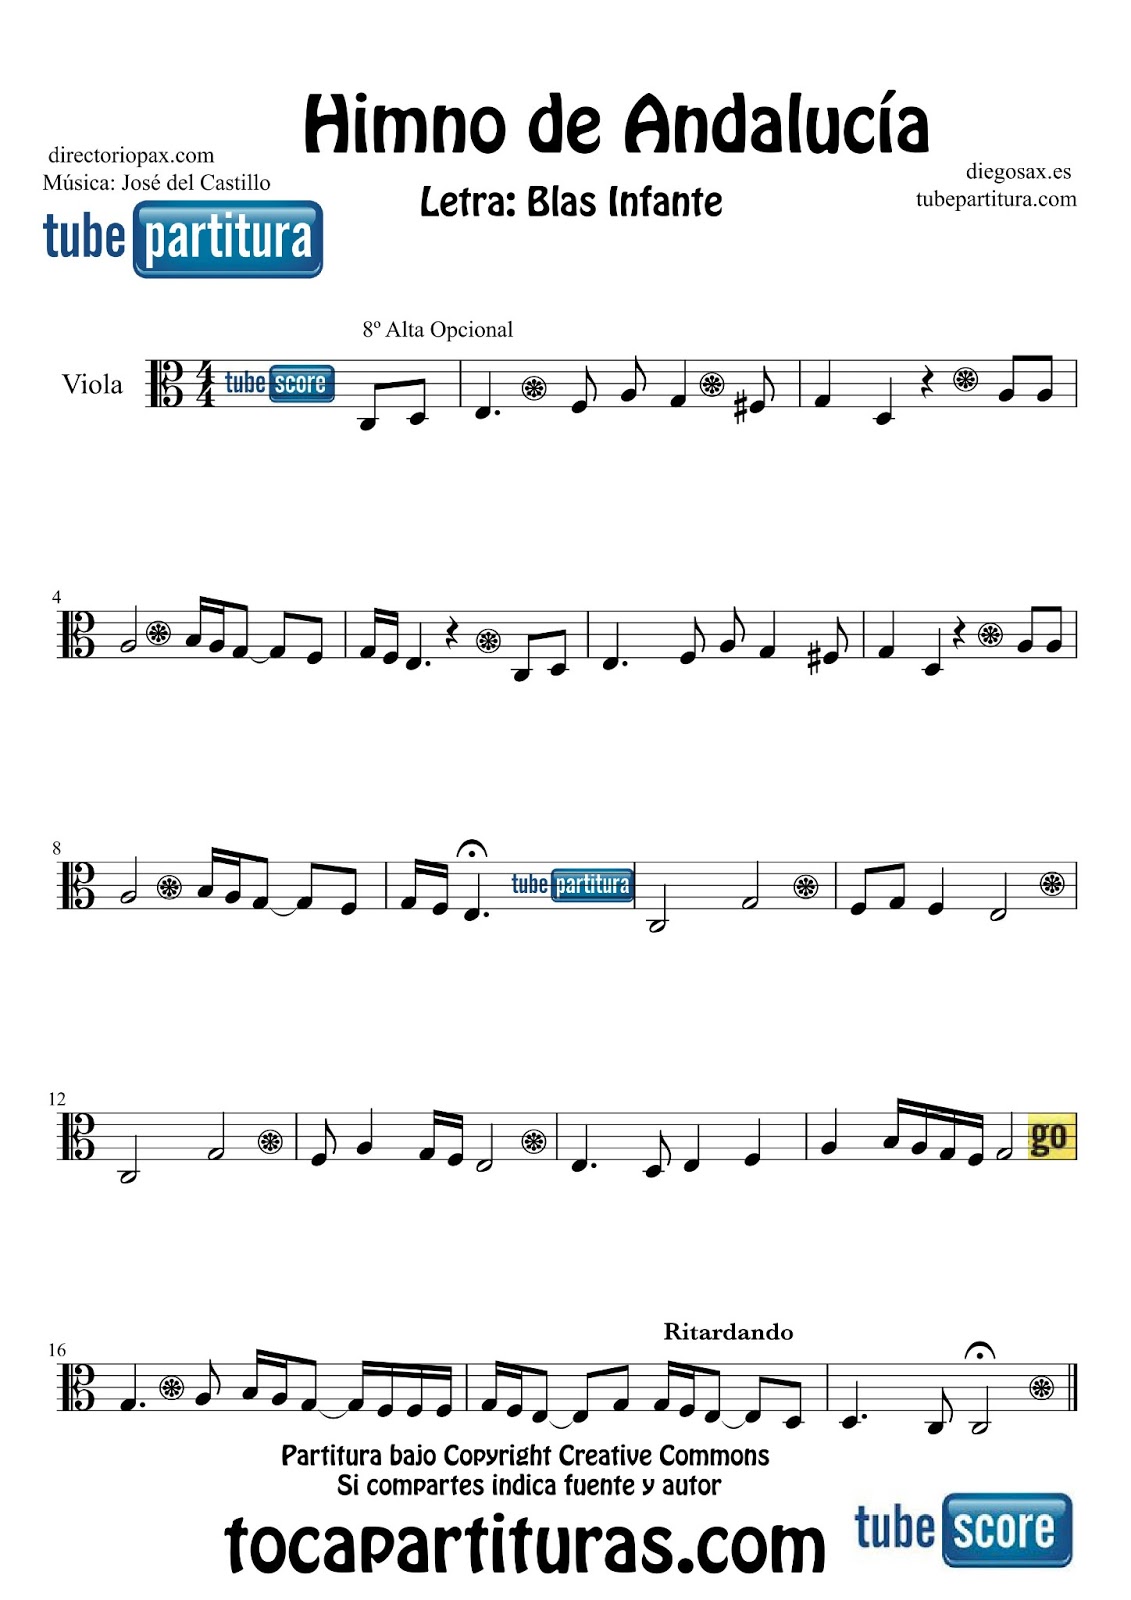 diegosax: El Himno de Andalucía Partitura para Flauta, Violín, Saxofón Alto, Viola, Oboe, Clarinete, Saxo Tenor, Soprano, Trombón, Fliscorno, Violonchelo, Fagot, Barítono, Tuba Elicón y Corno Inglés. Música José del